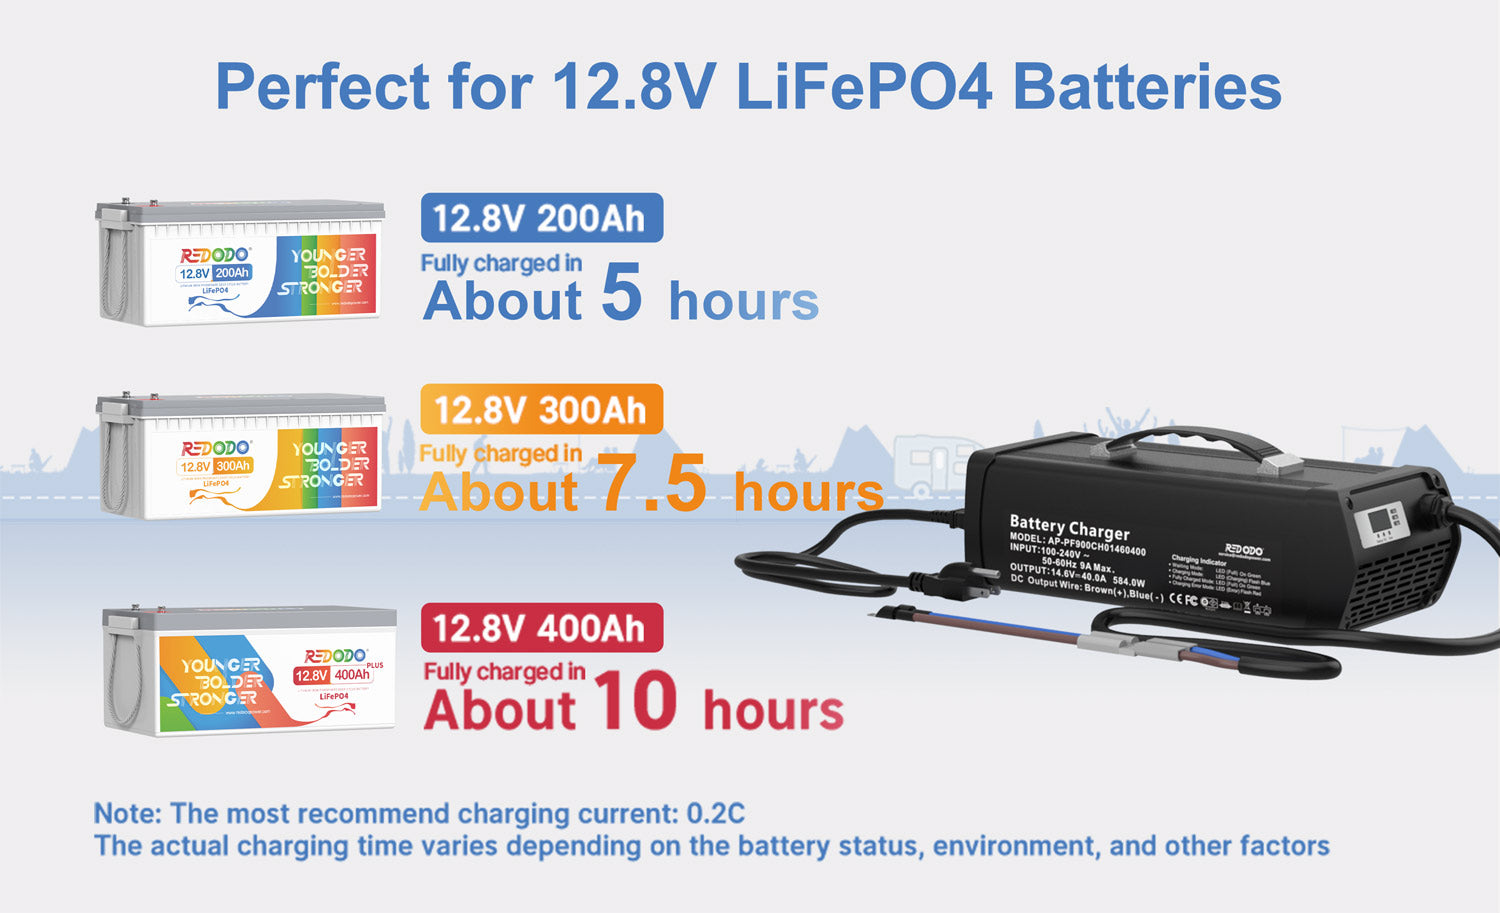 Redodo 14.6V 10A LiFePO4 Battery Charger - Redodo Power